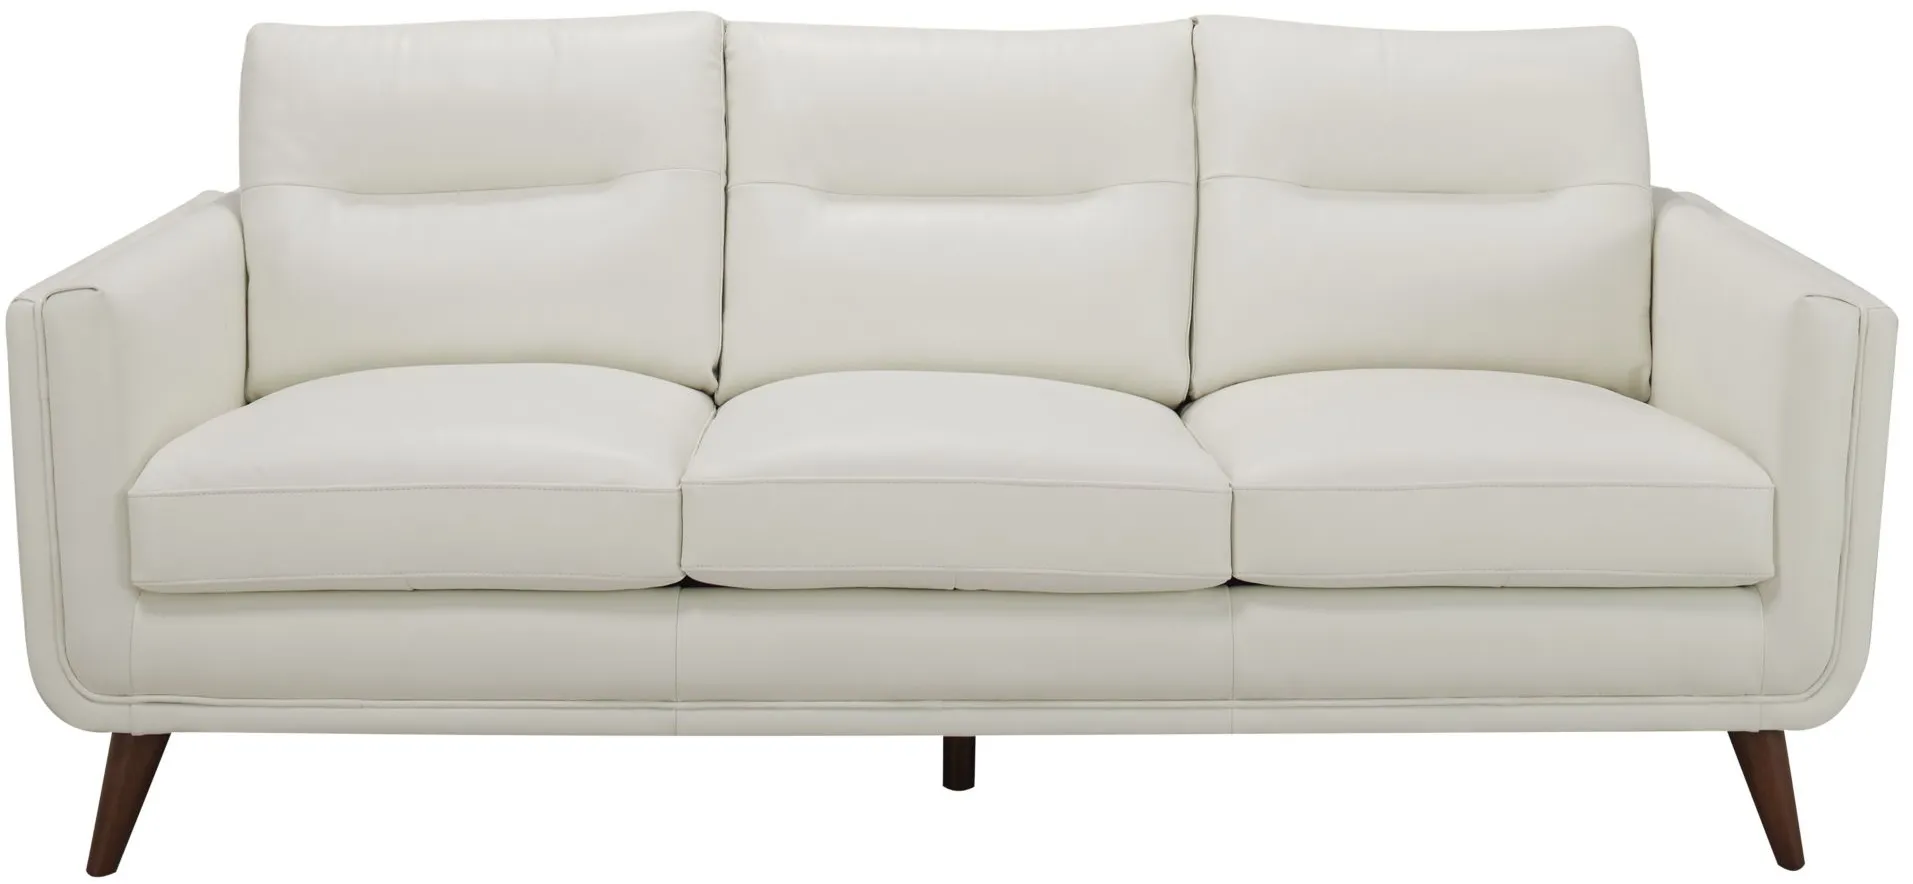 Bleeker Street Sofa in White by Bellanest